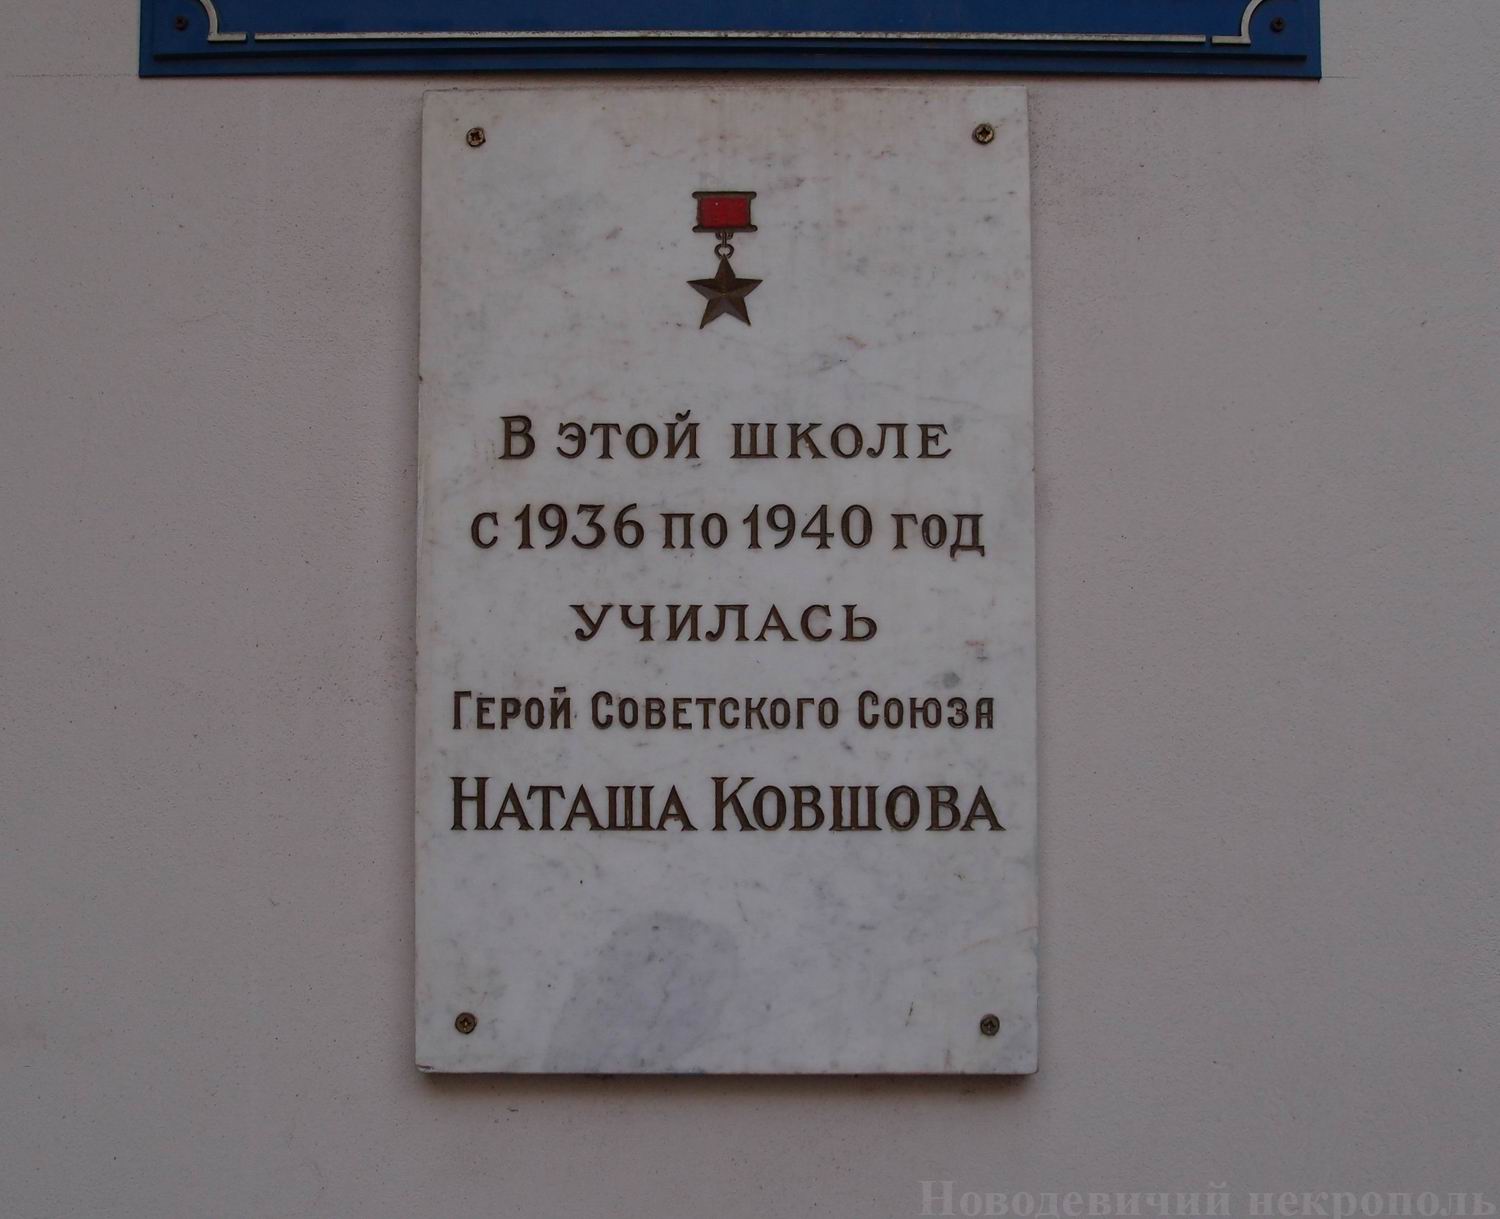 Мемориальная доска Ковшовой Н.В. (1920–1942), в Уланском переулке, дом 8.